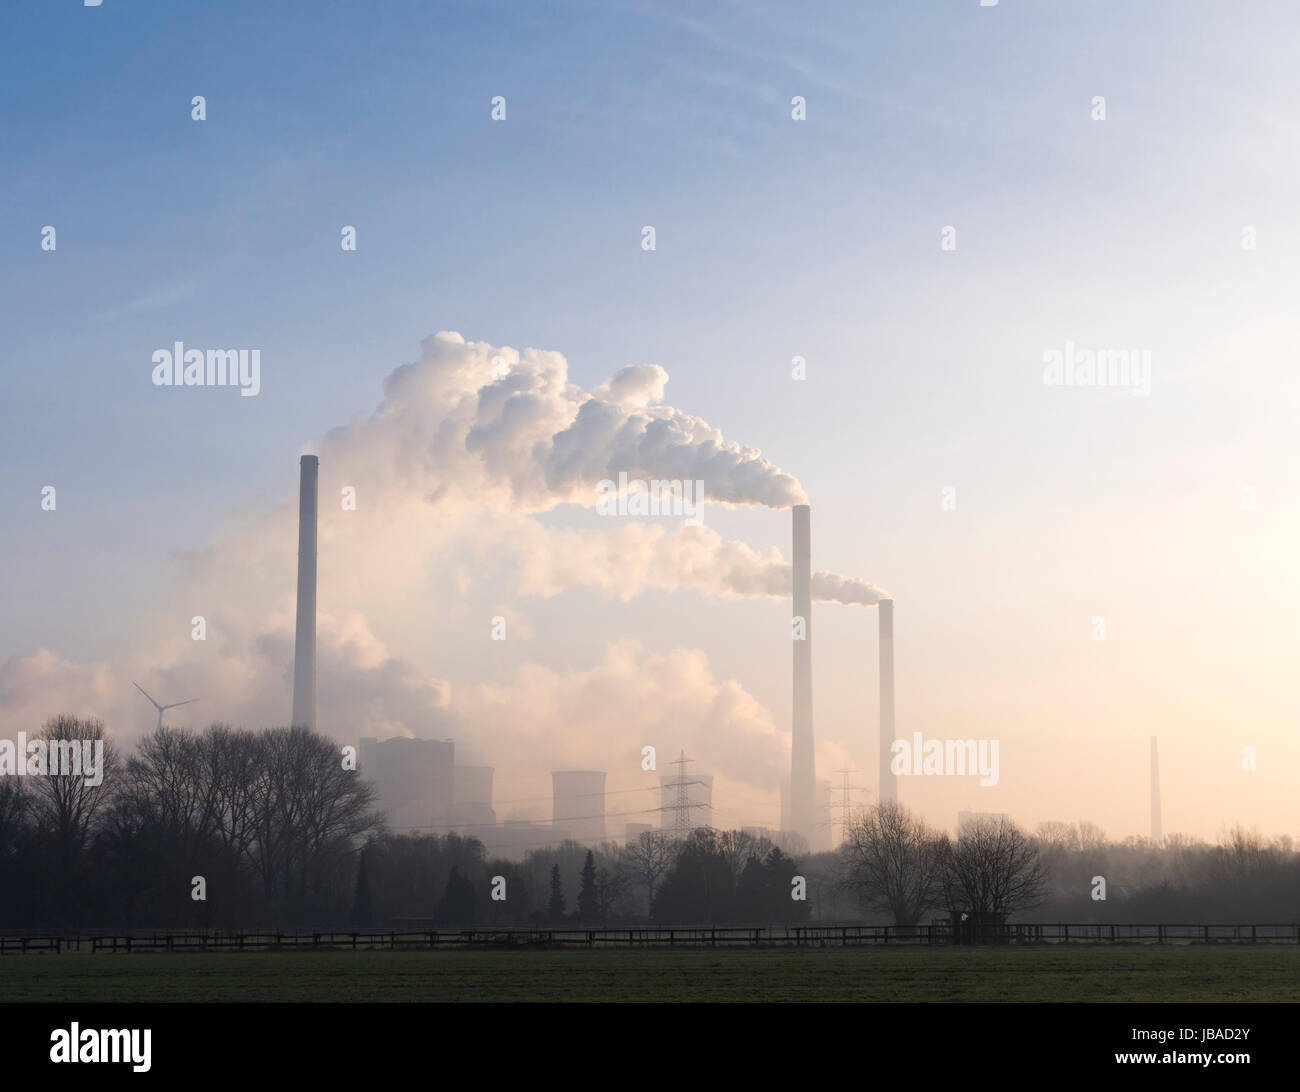 Kraftwerk Scholven ist ein E.ON im Besitz Kohle-Kraftwerk in Gelsenkirchen, Deutschland. Die installierte Leistung von 2300 MW ist es eines der mächtigsten Kohle-Kraftwerke in Europa. Stockfoto